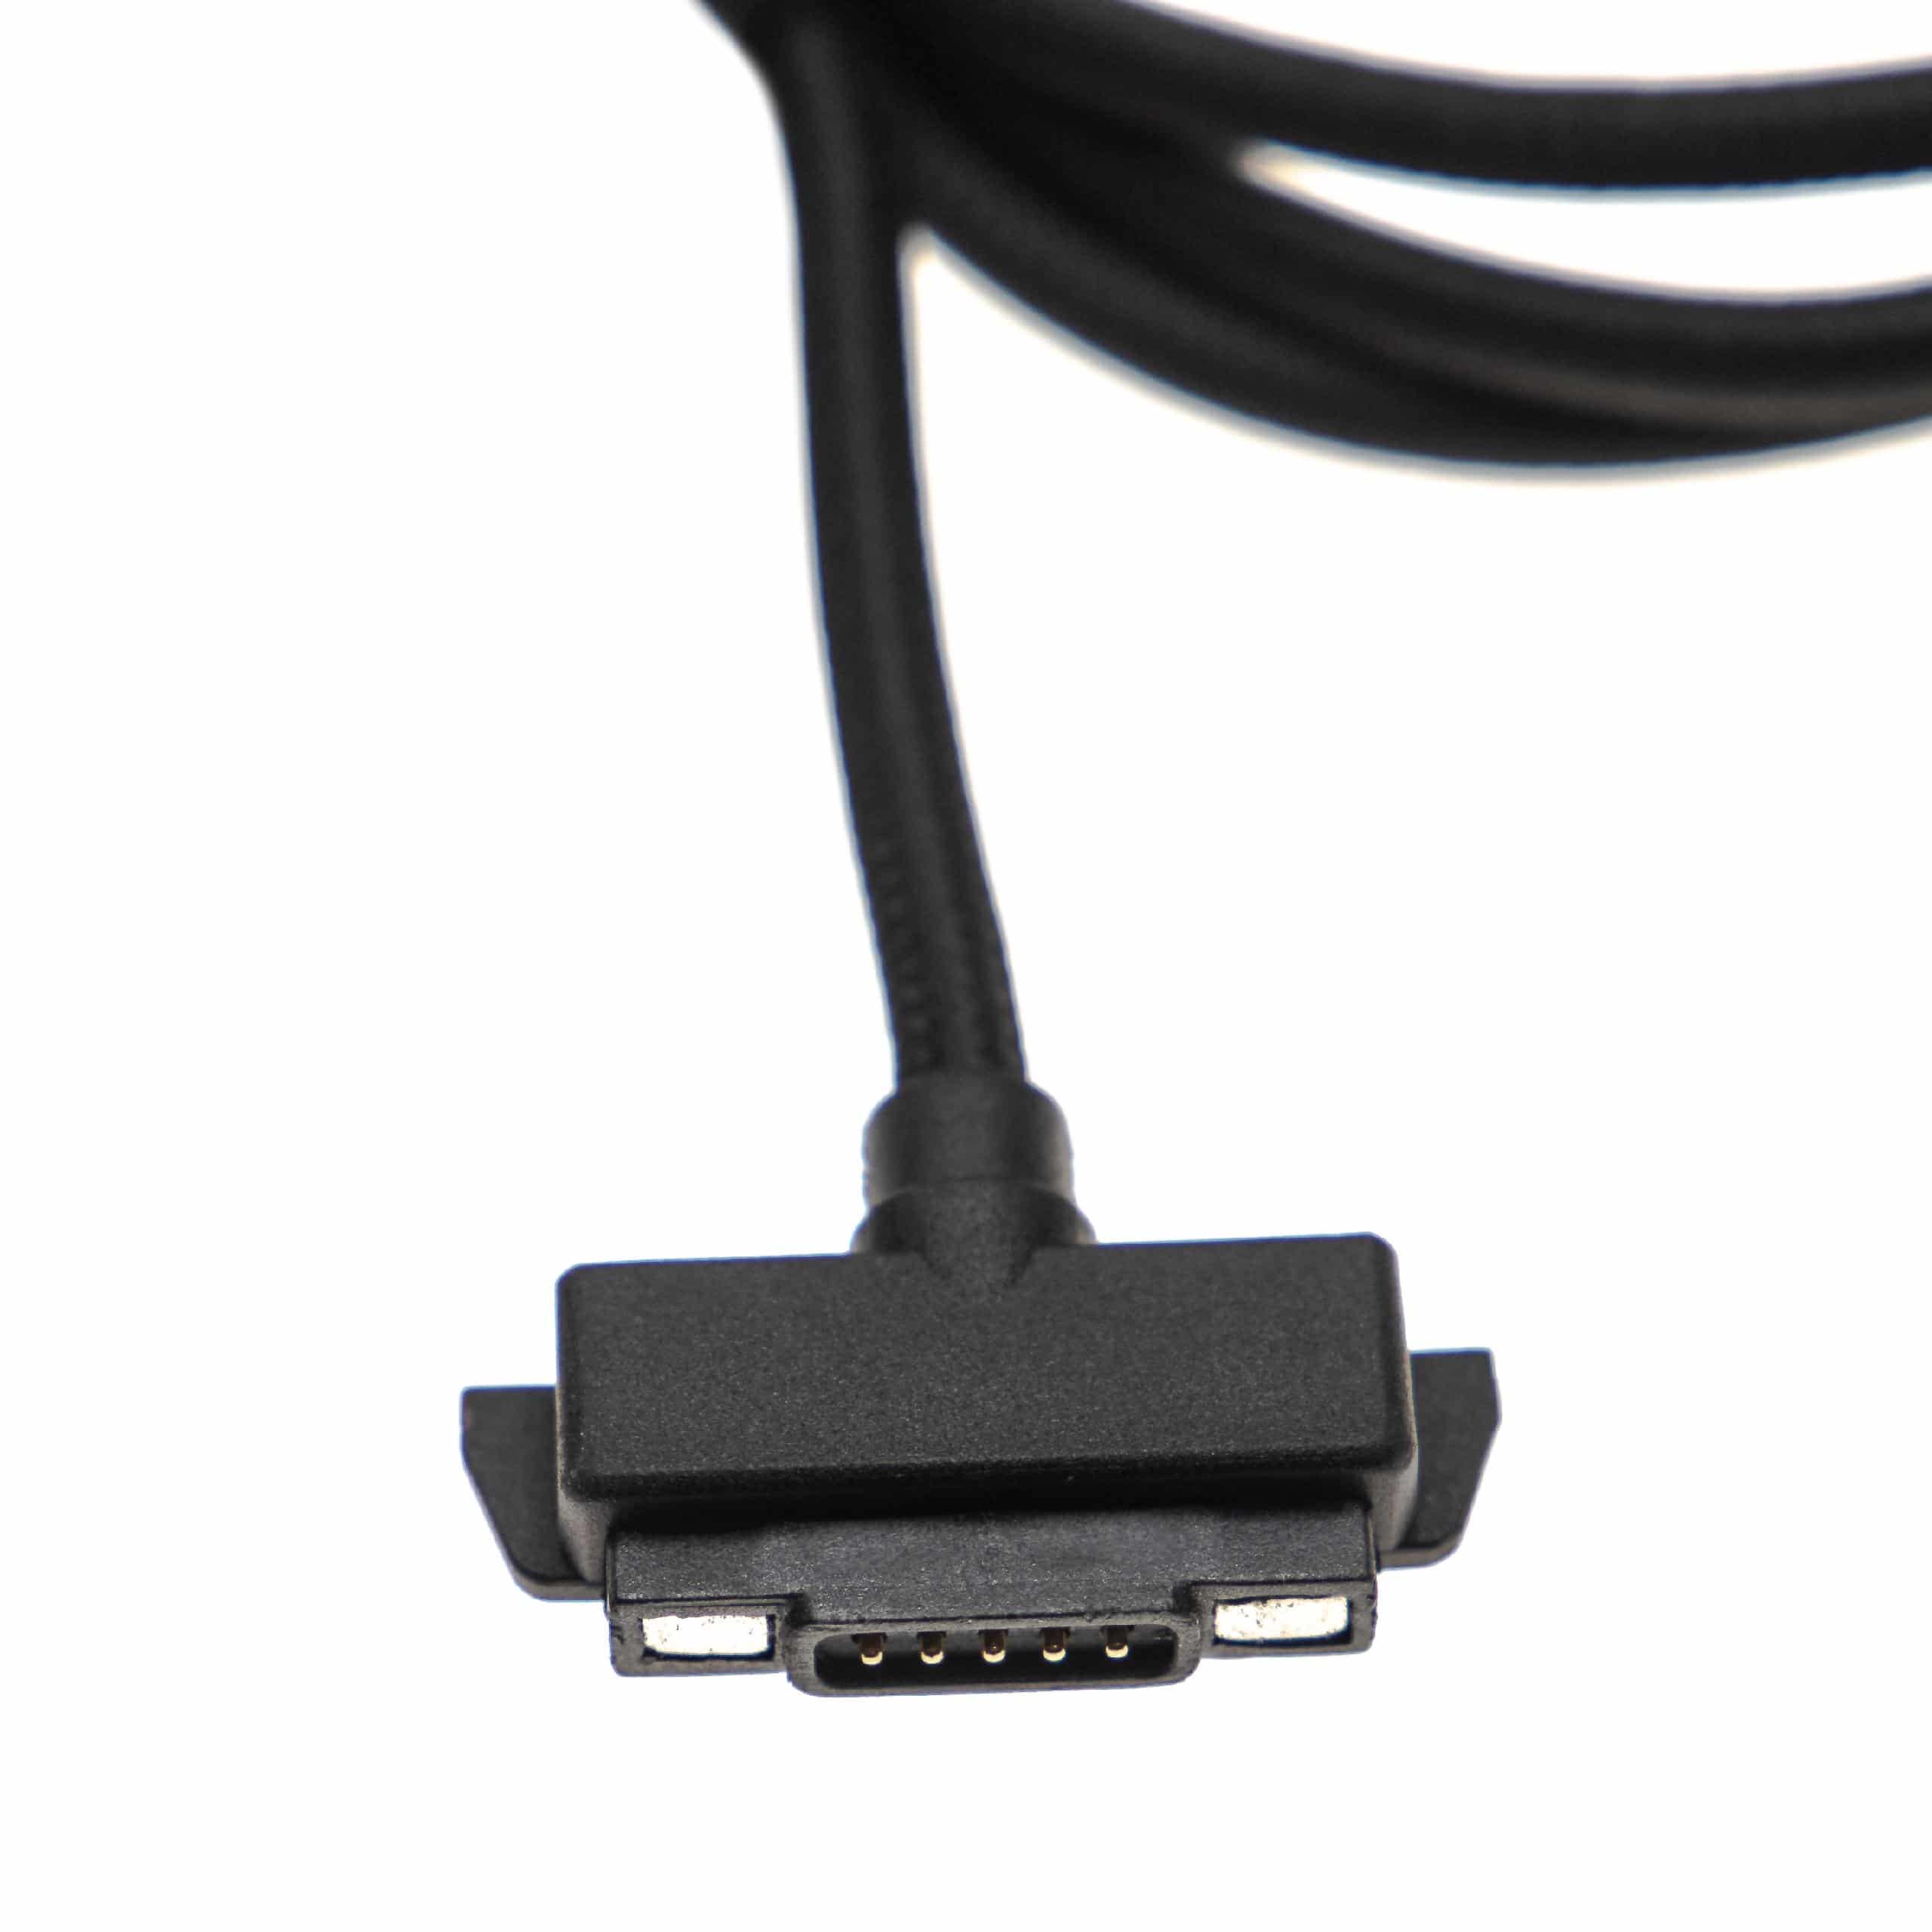 Cavo di ricarica USB per smartphone, cellulare Sonim XP6 - magnetico